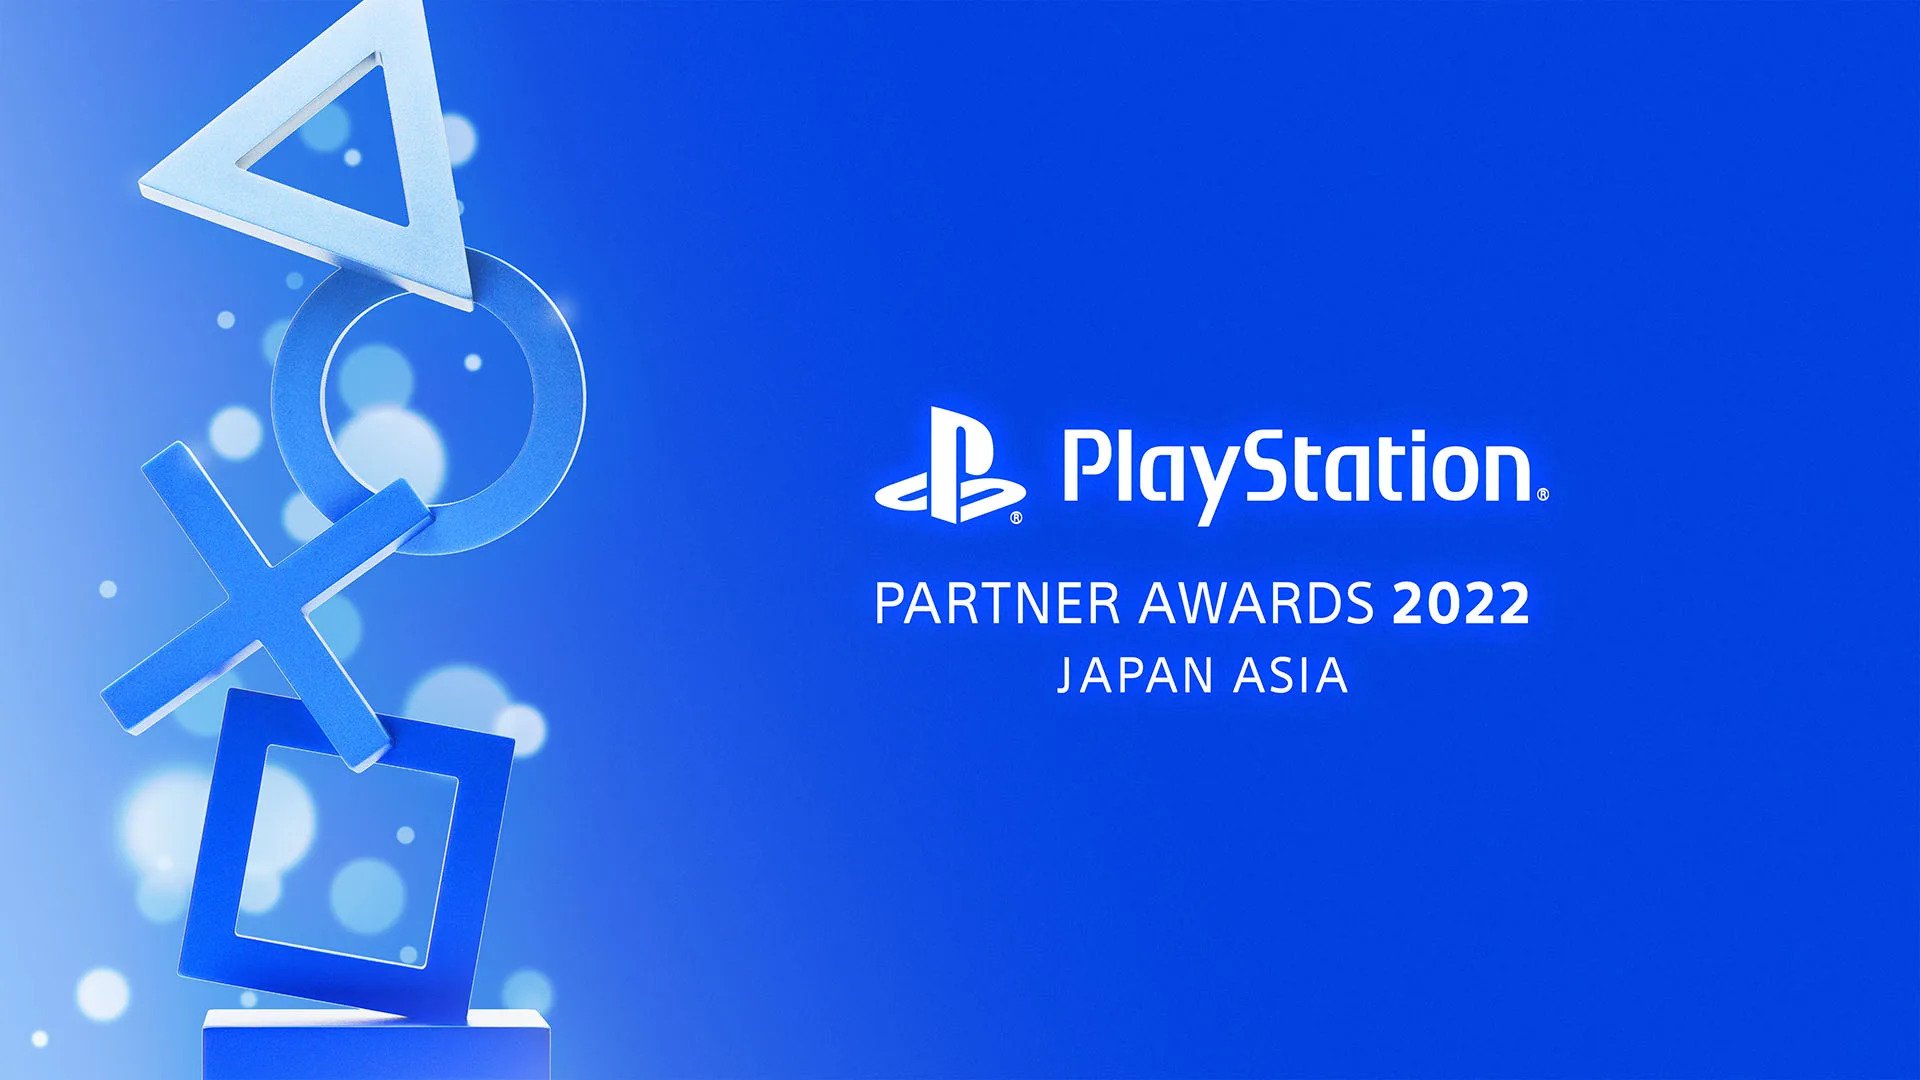 일본과 아시아의 PlayStation Partner Awards 2022가 12월 2일로 예정되어 있습니다.